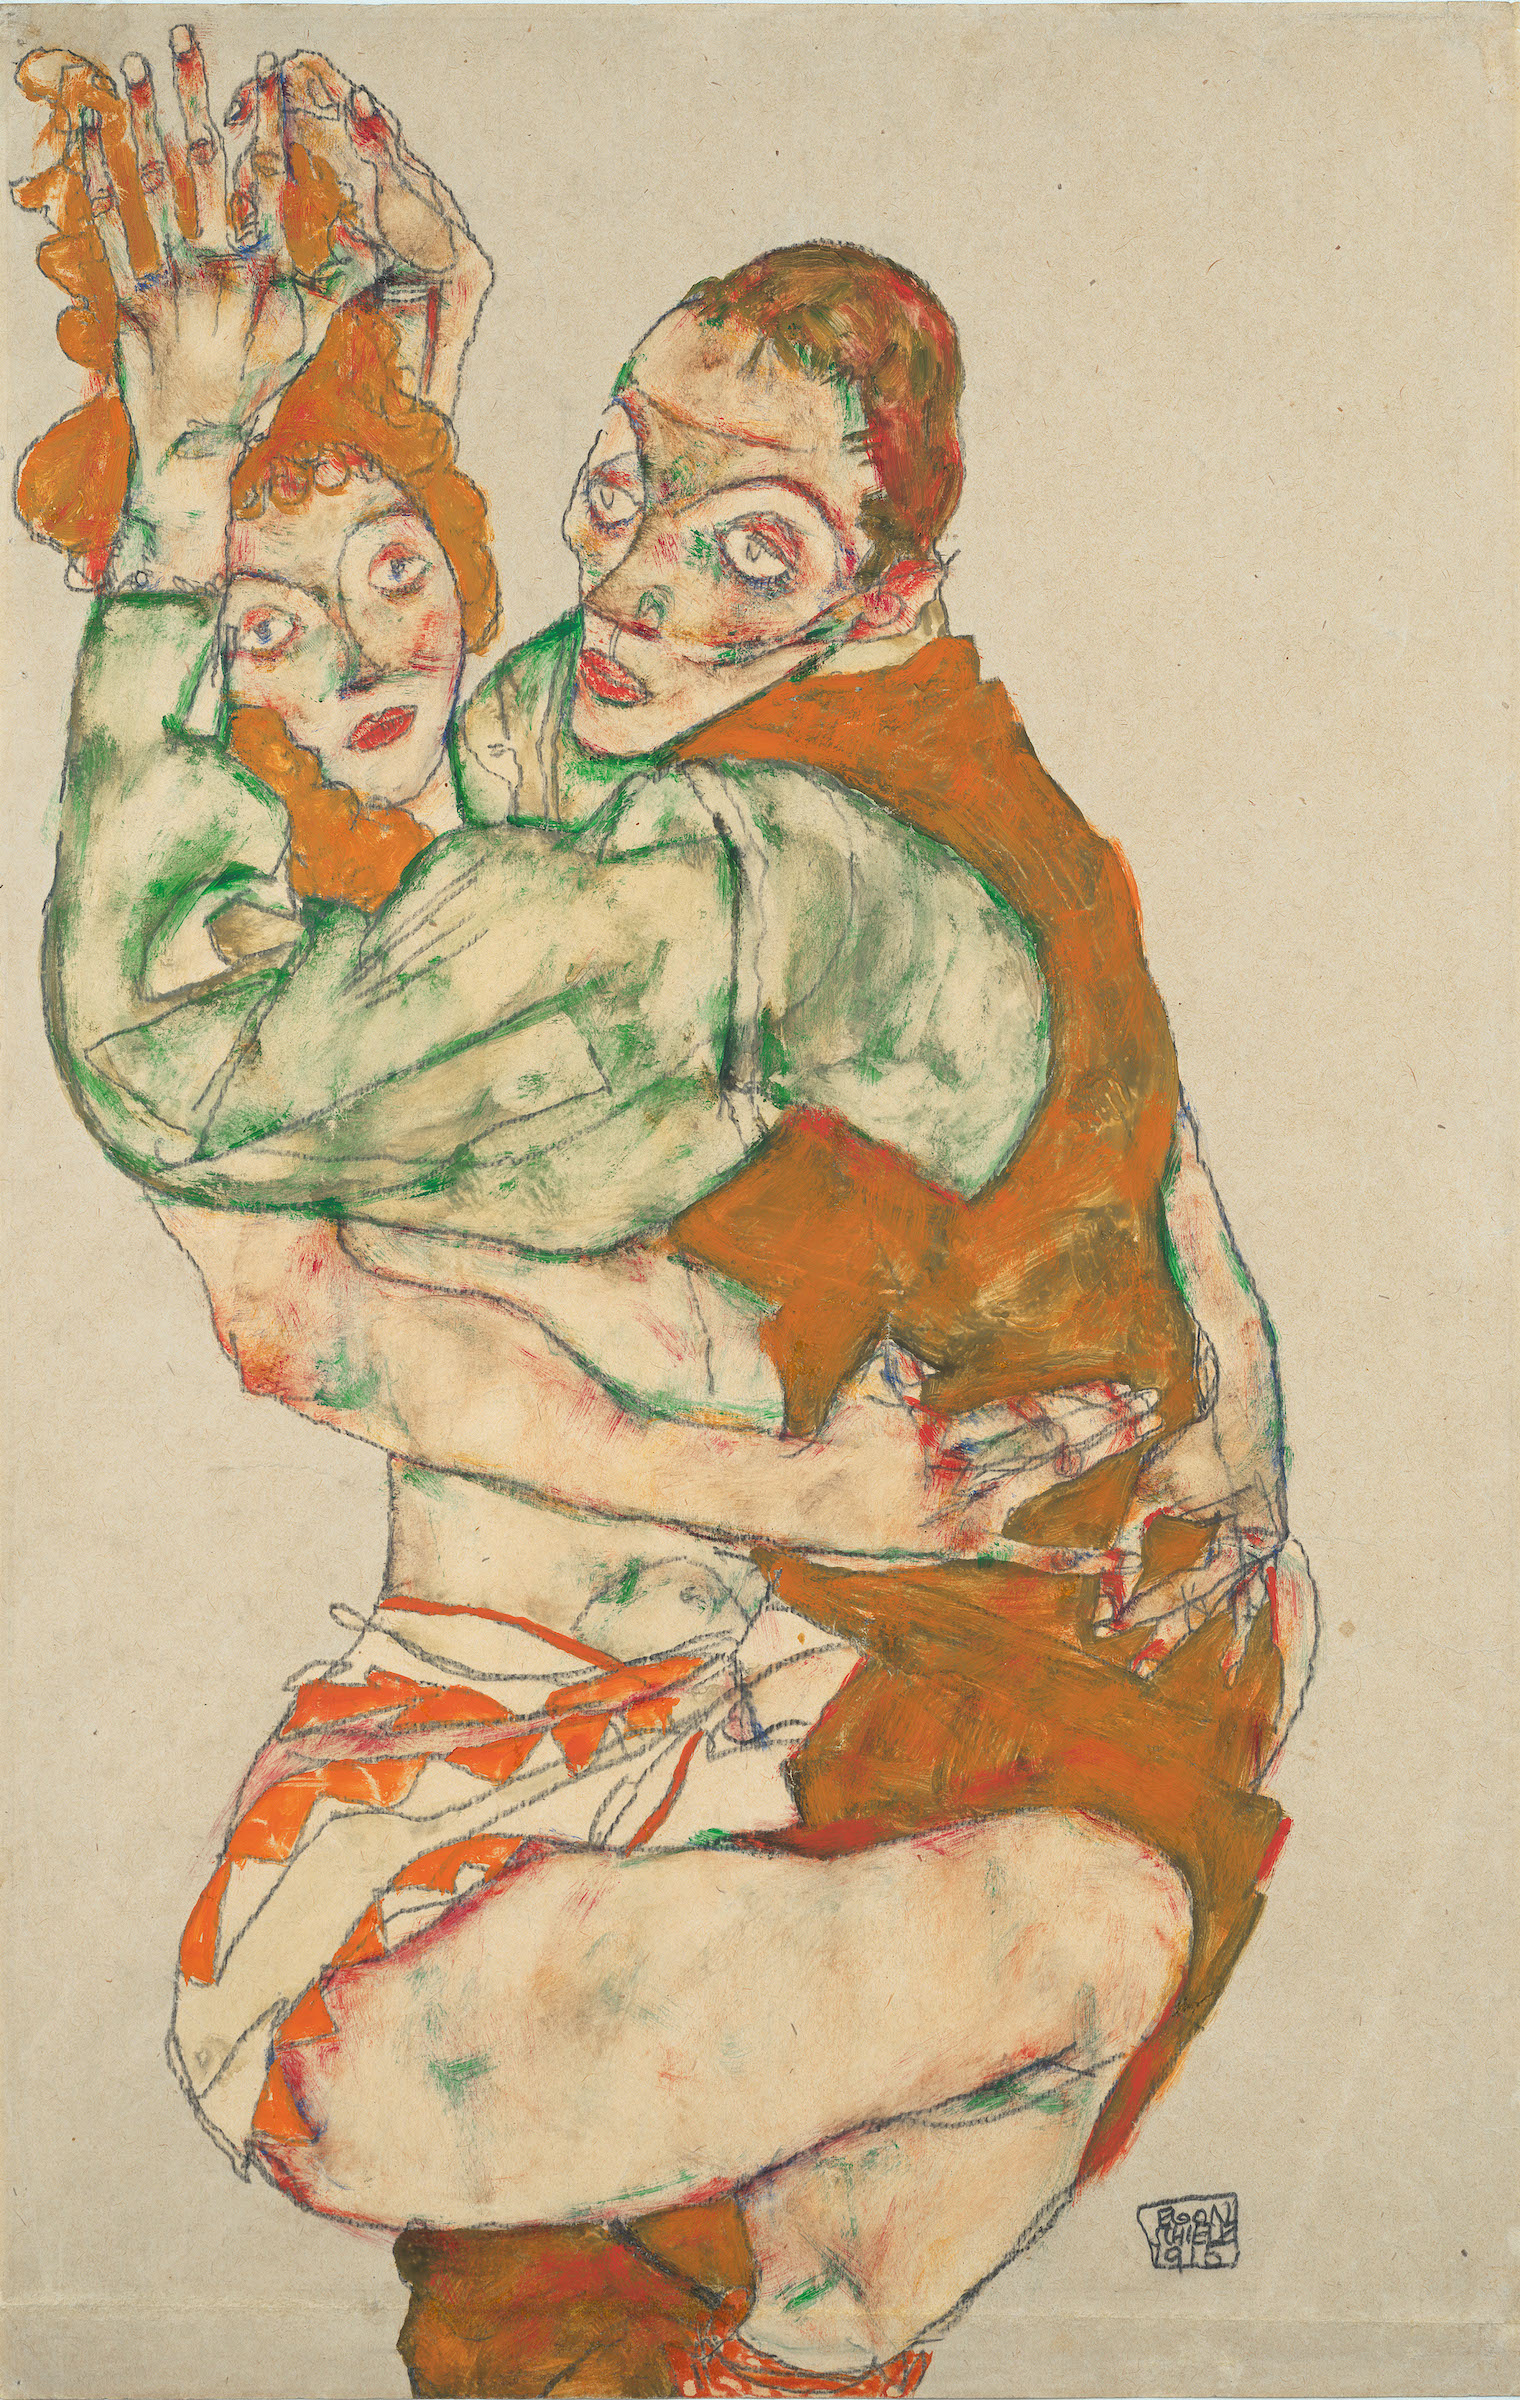 交わり by Egon Schiele - 1915年 - 31.7 x 49.6 cm 